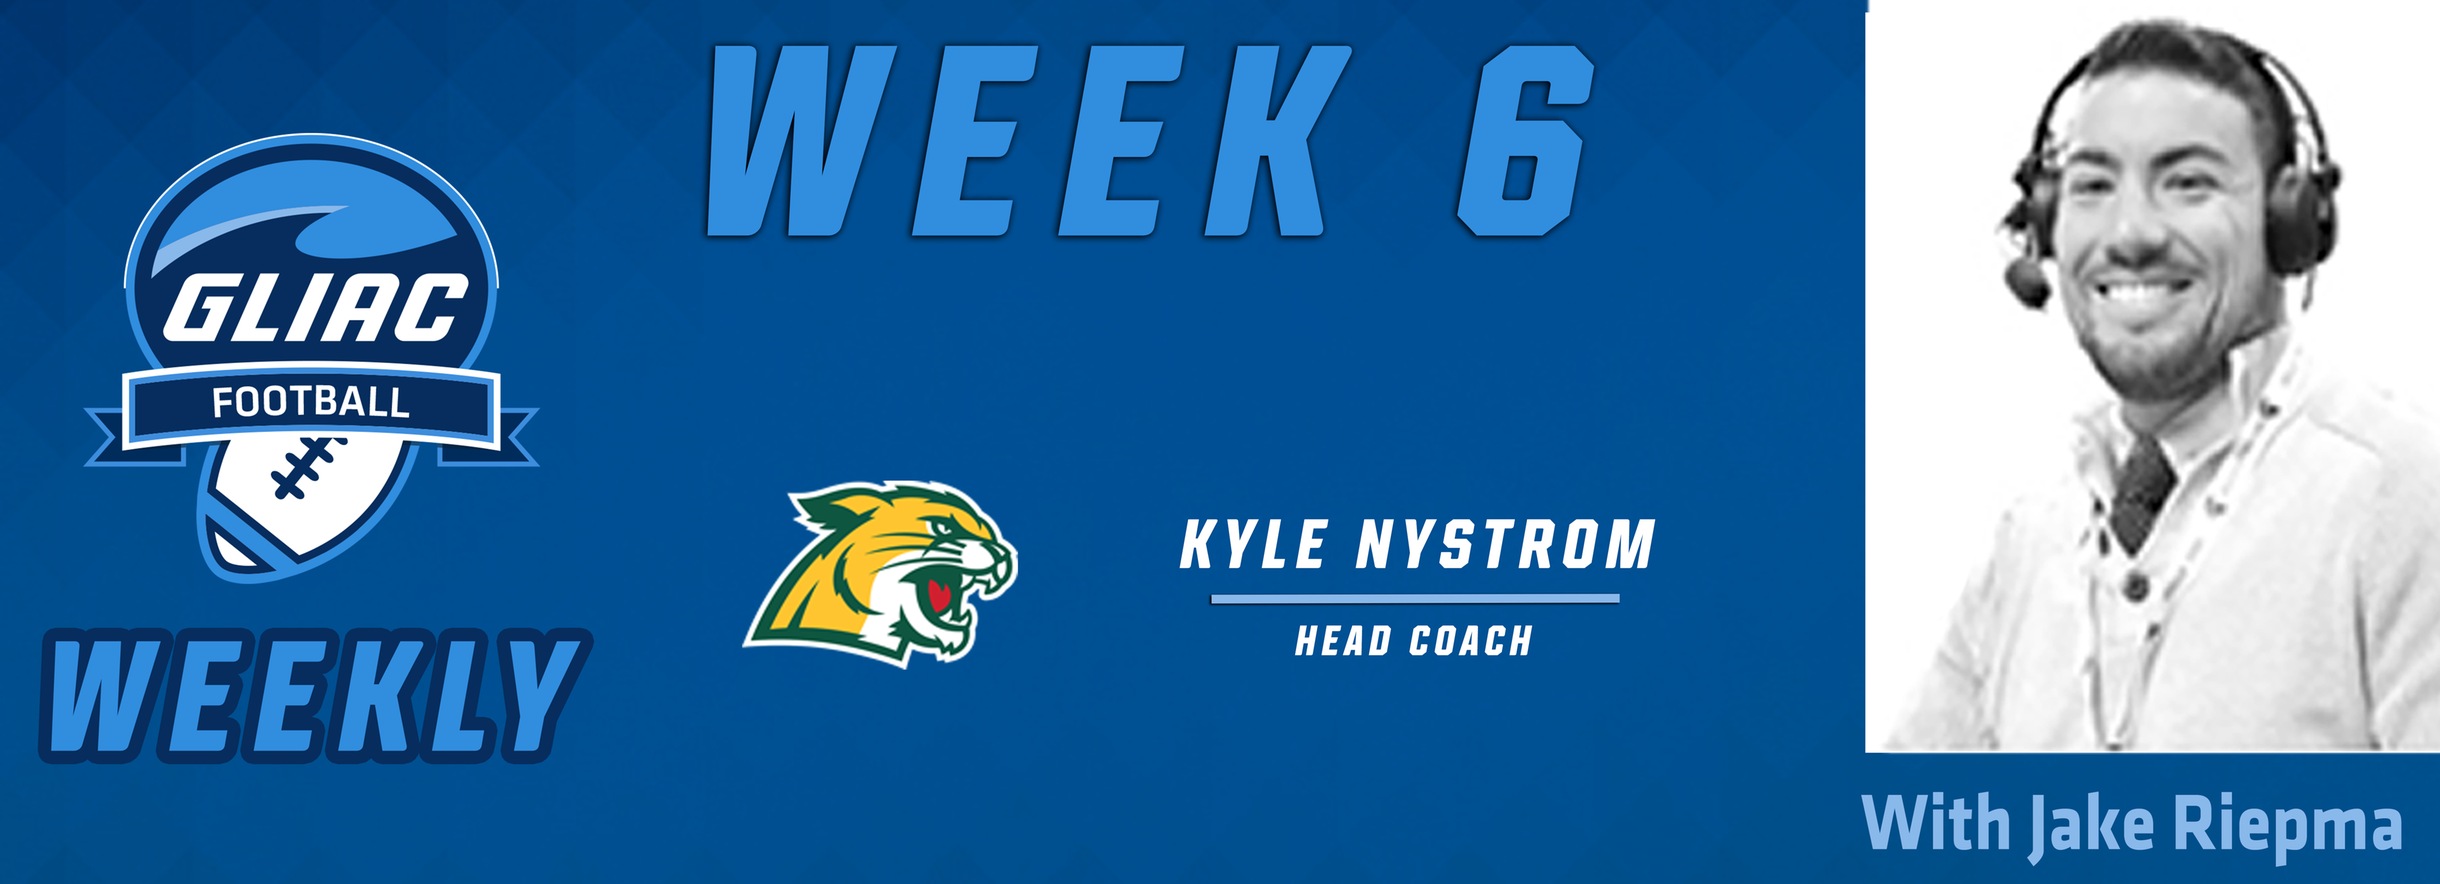 Football Weekly - Week 6 | NMU Kyle Nystrom